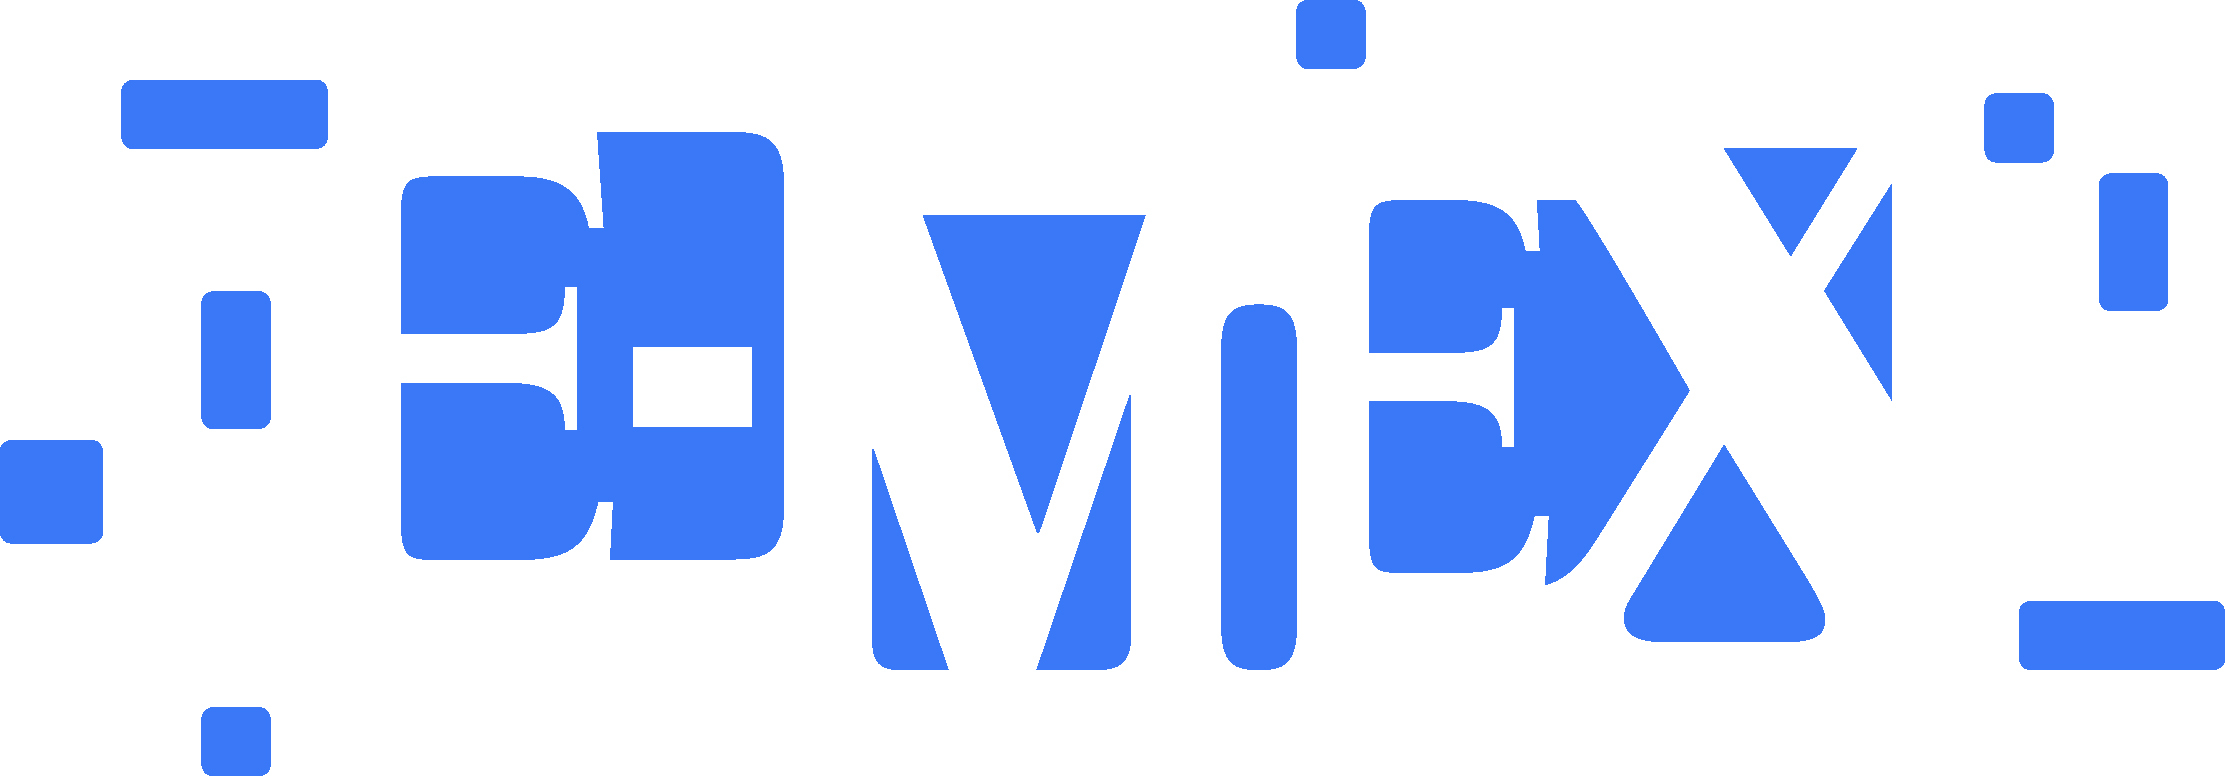 logo_e-mex_blau2